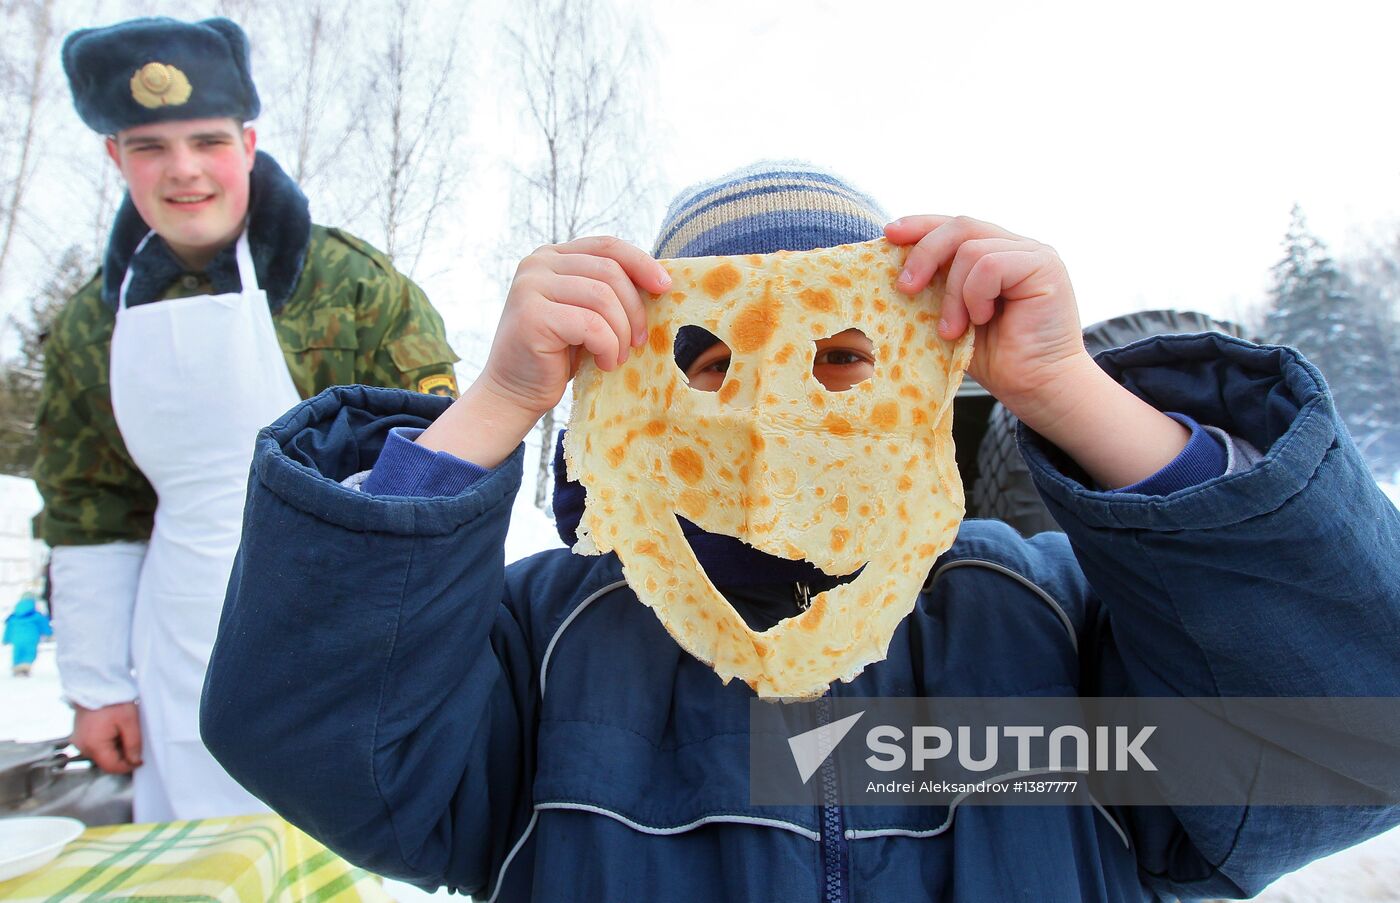 Belarus' interior troops celebrate Butter Week